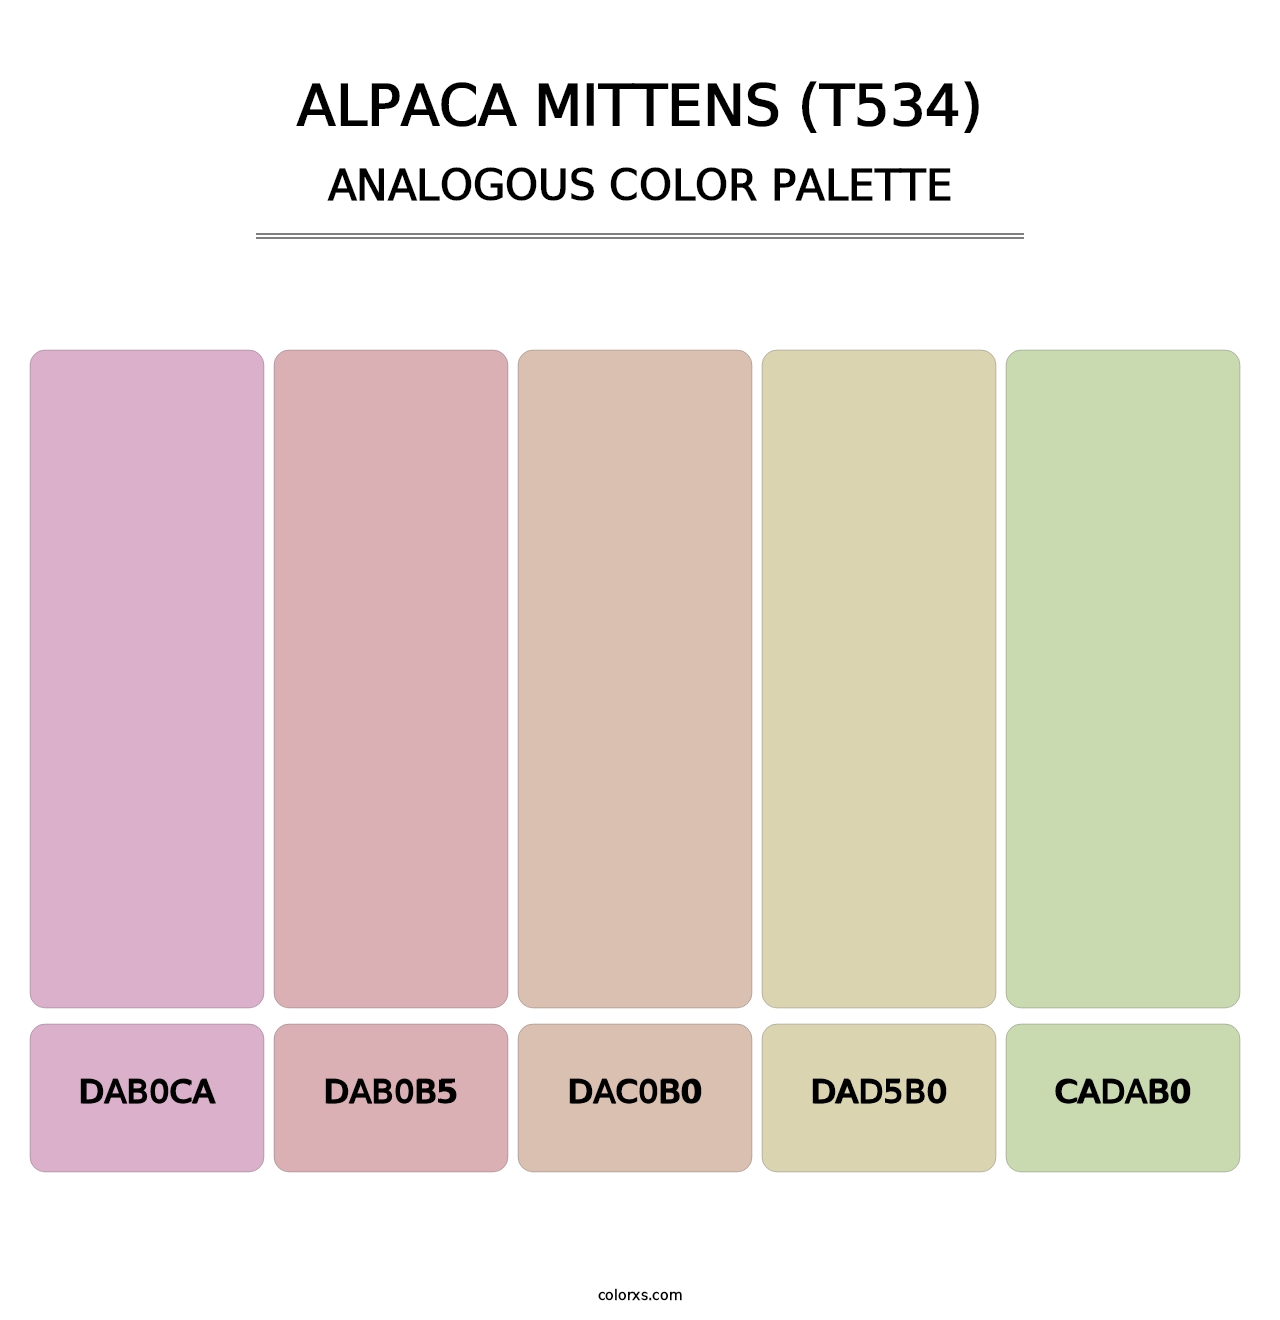 Alpaca Mittens (T534) - Analogous Color Palette